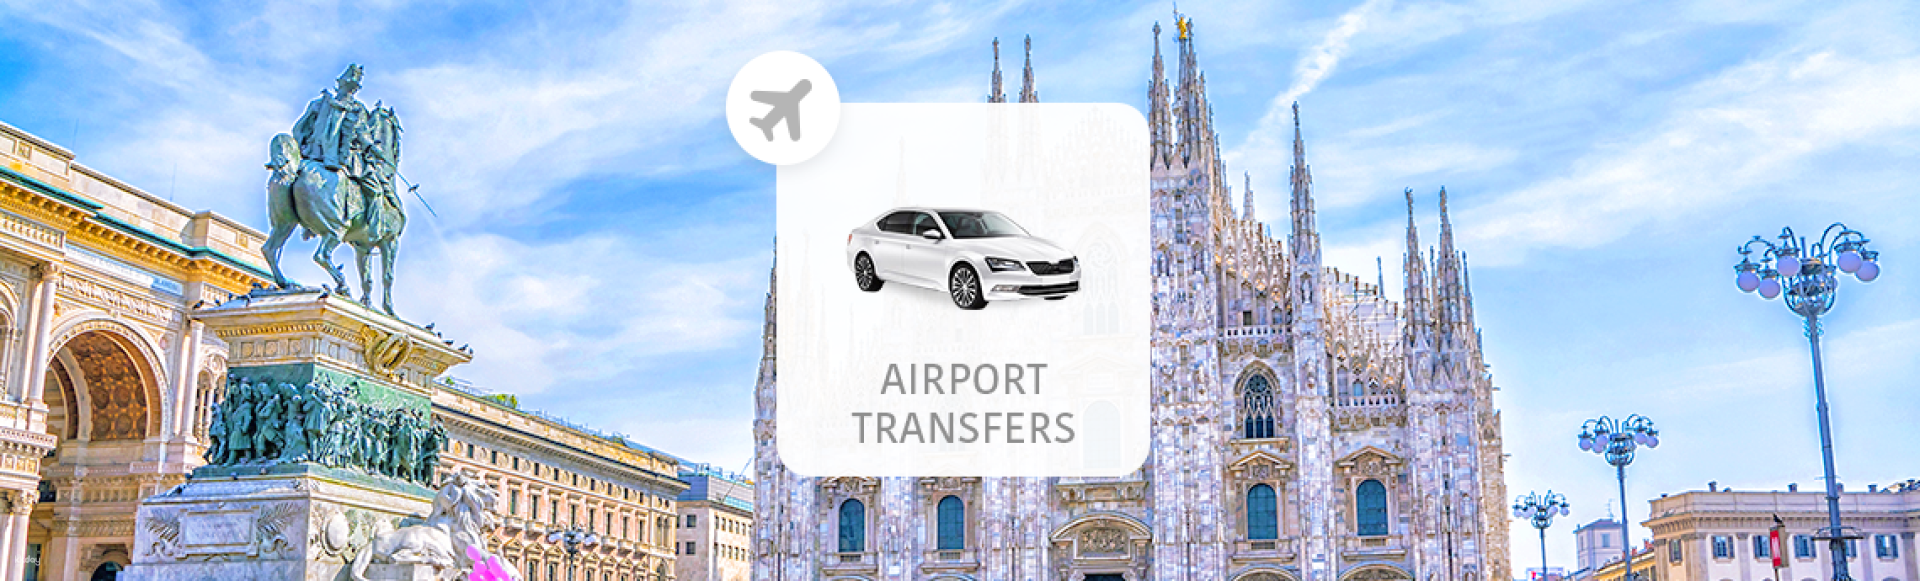 義大利-米蘭機場(MXP)往返米蘭市區(含接機舉牌服務)| 機場接送專車